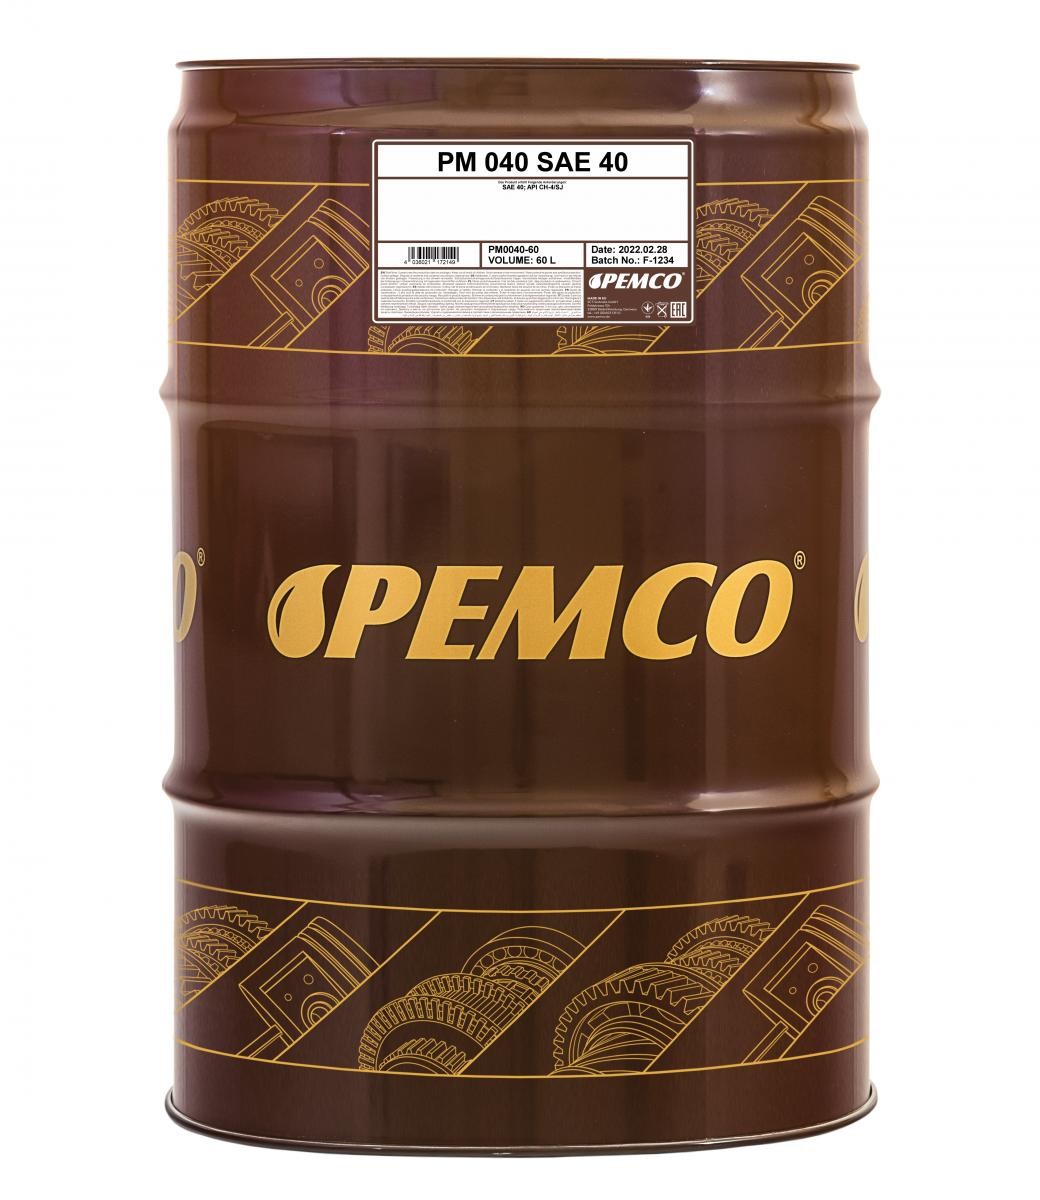 PM0040-60 PEMCO Oil KIA SAE 40, 60l